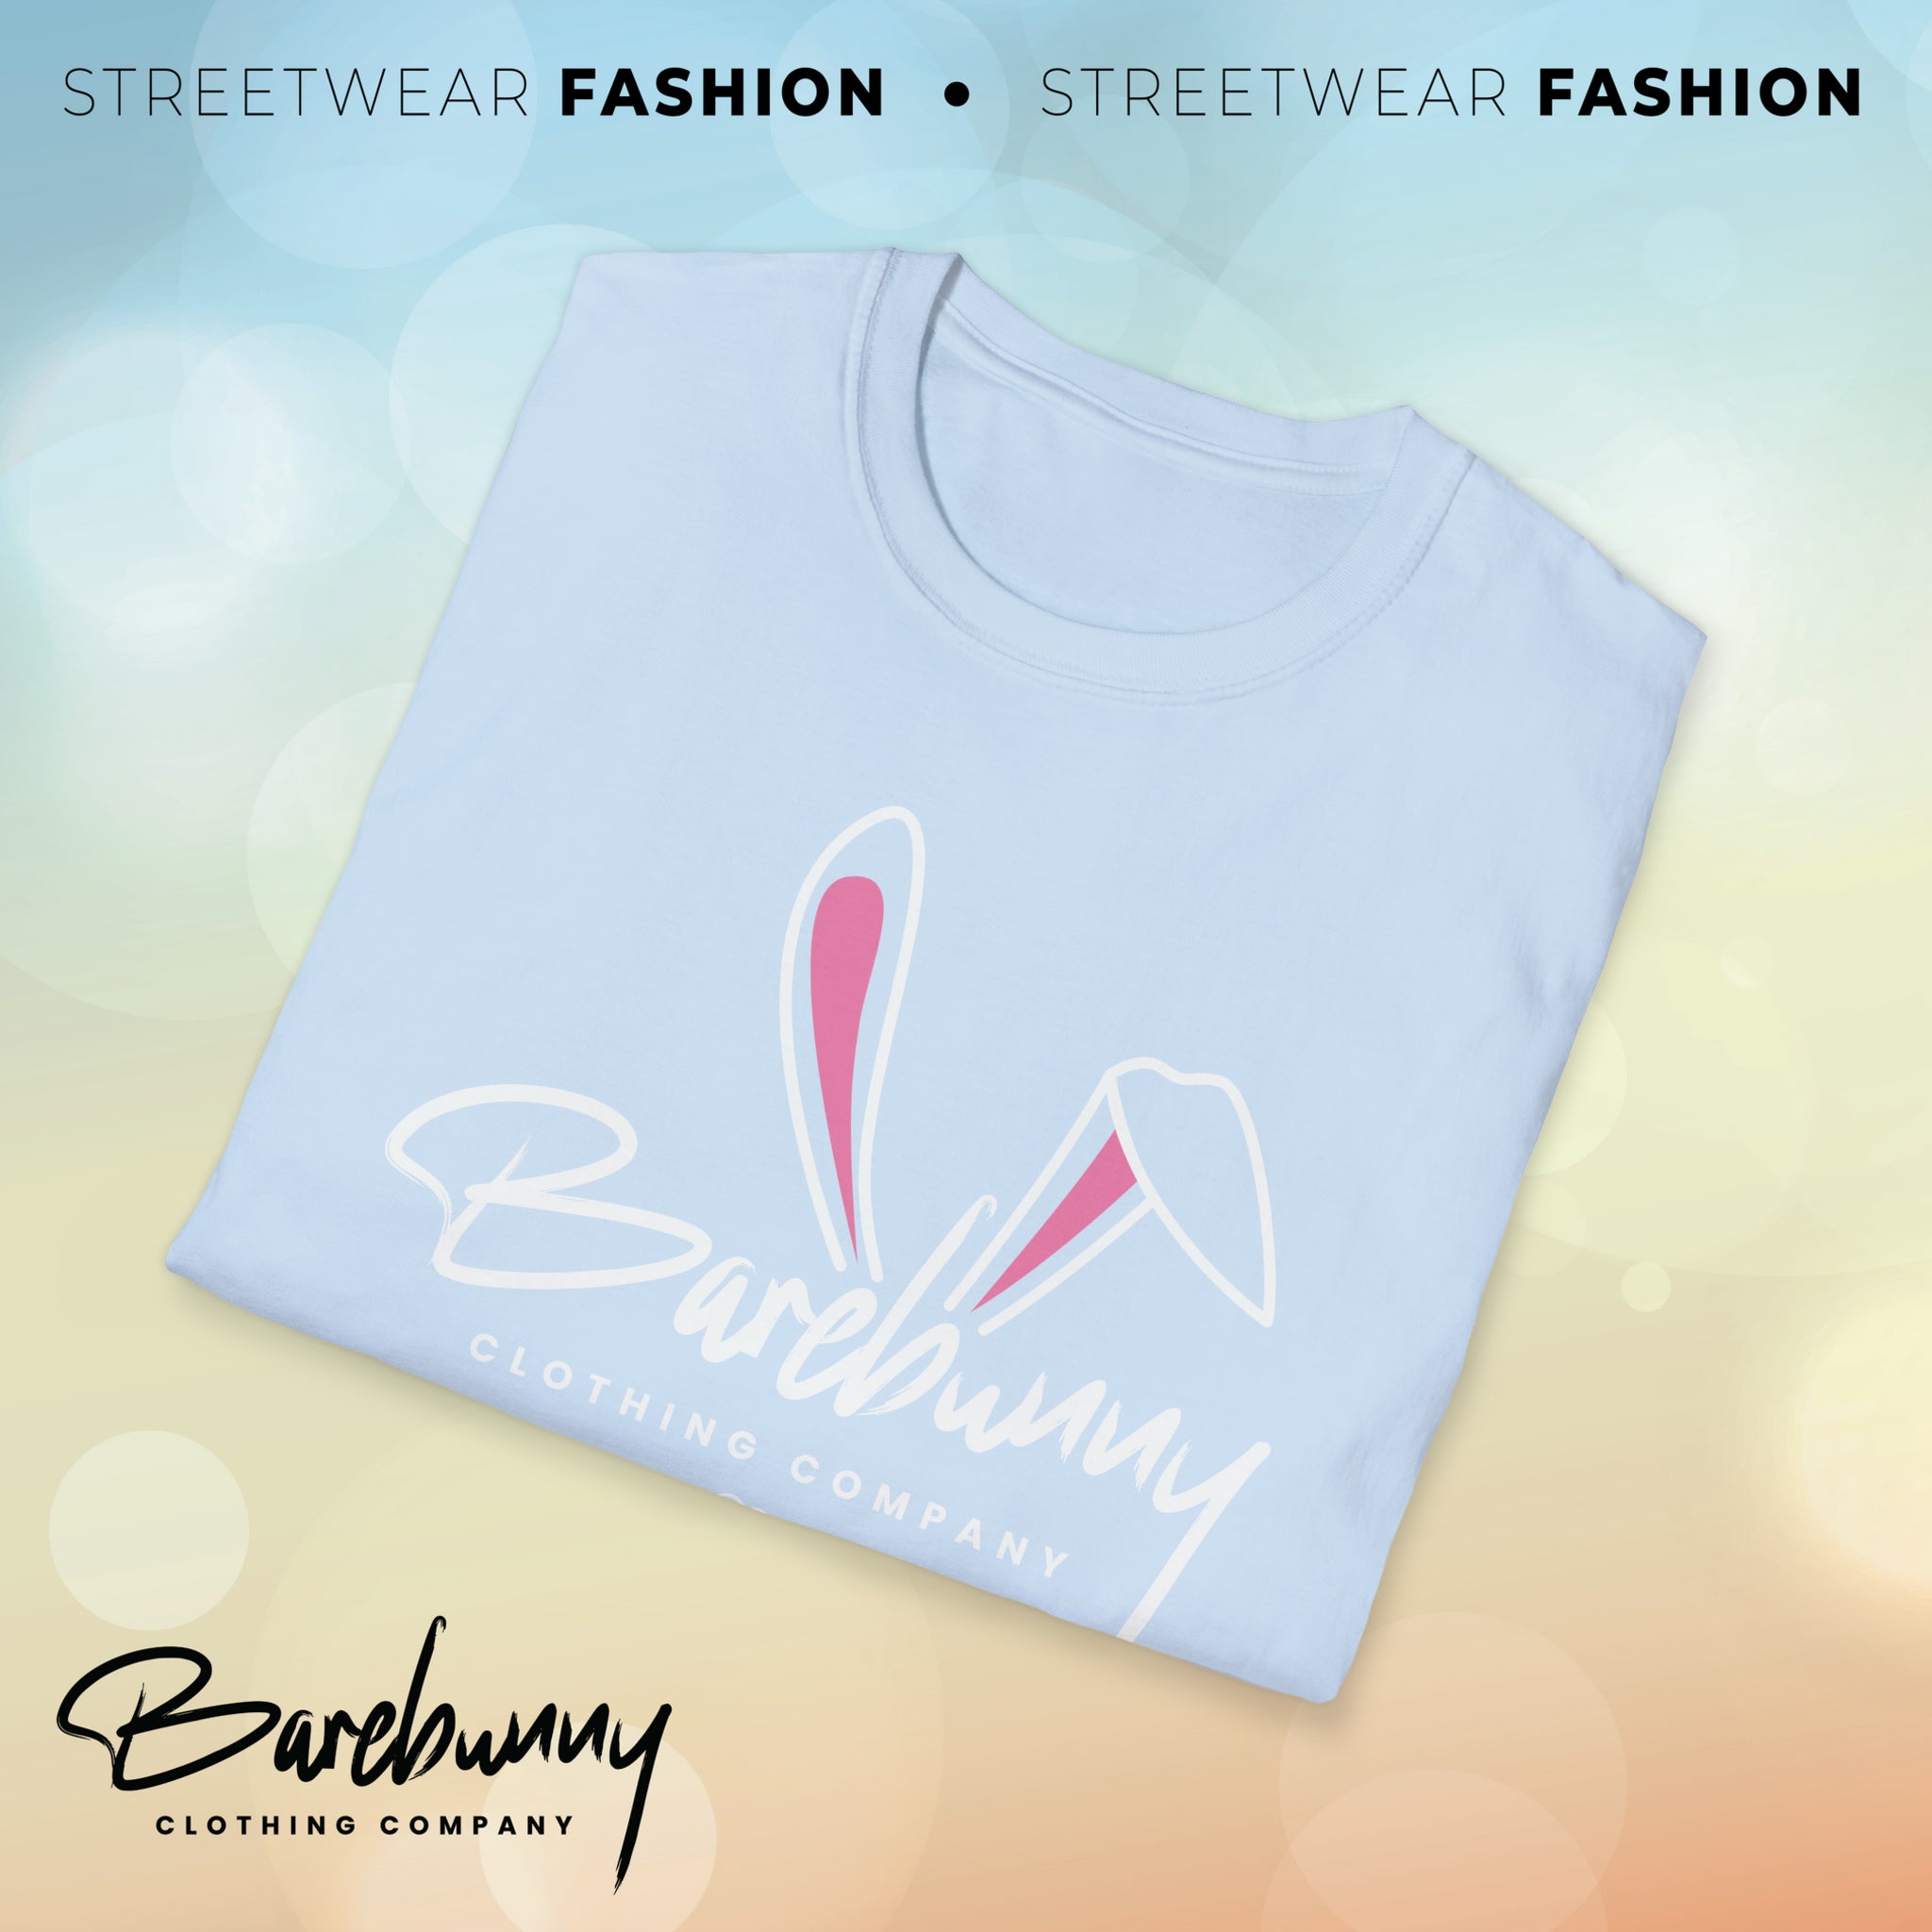 Barebunny - Unisex Softstyle T-Shirt (DTF)